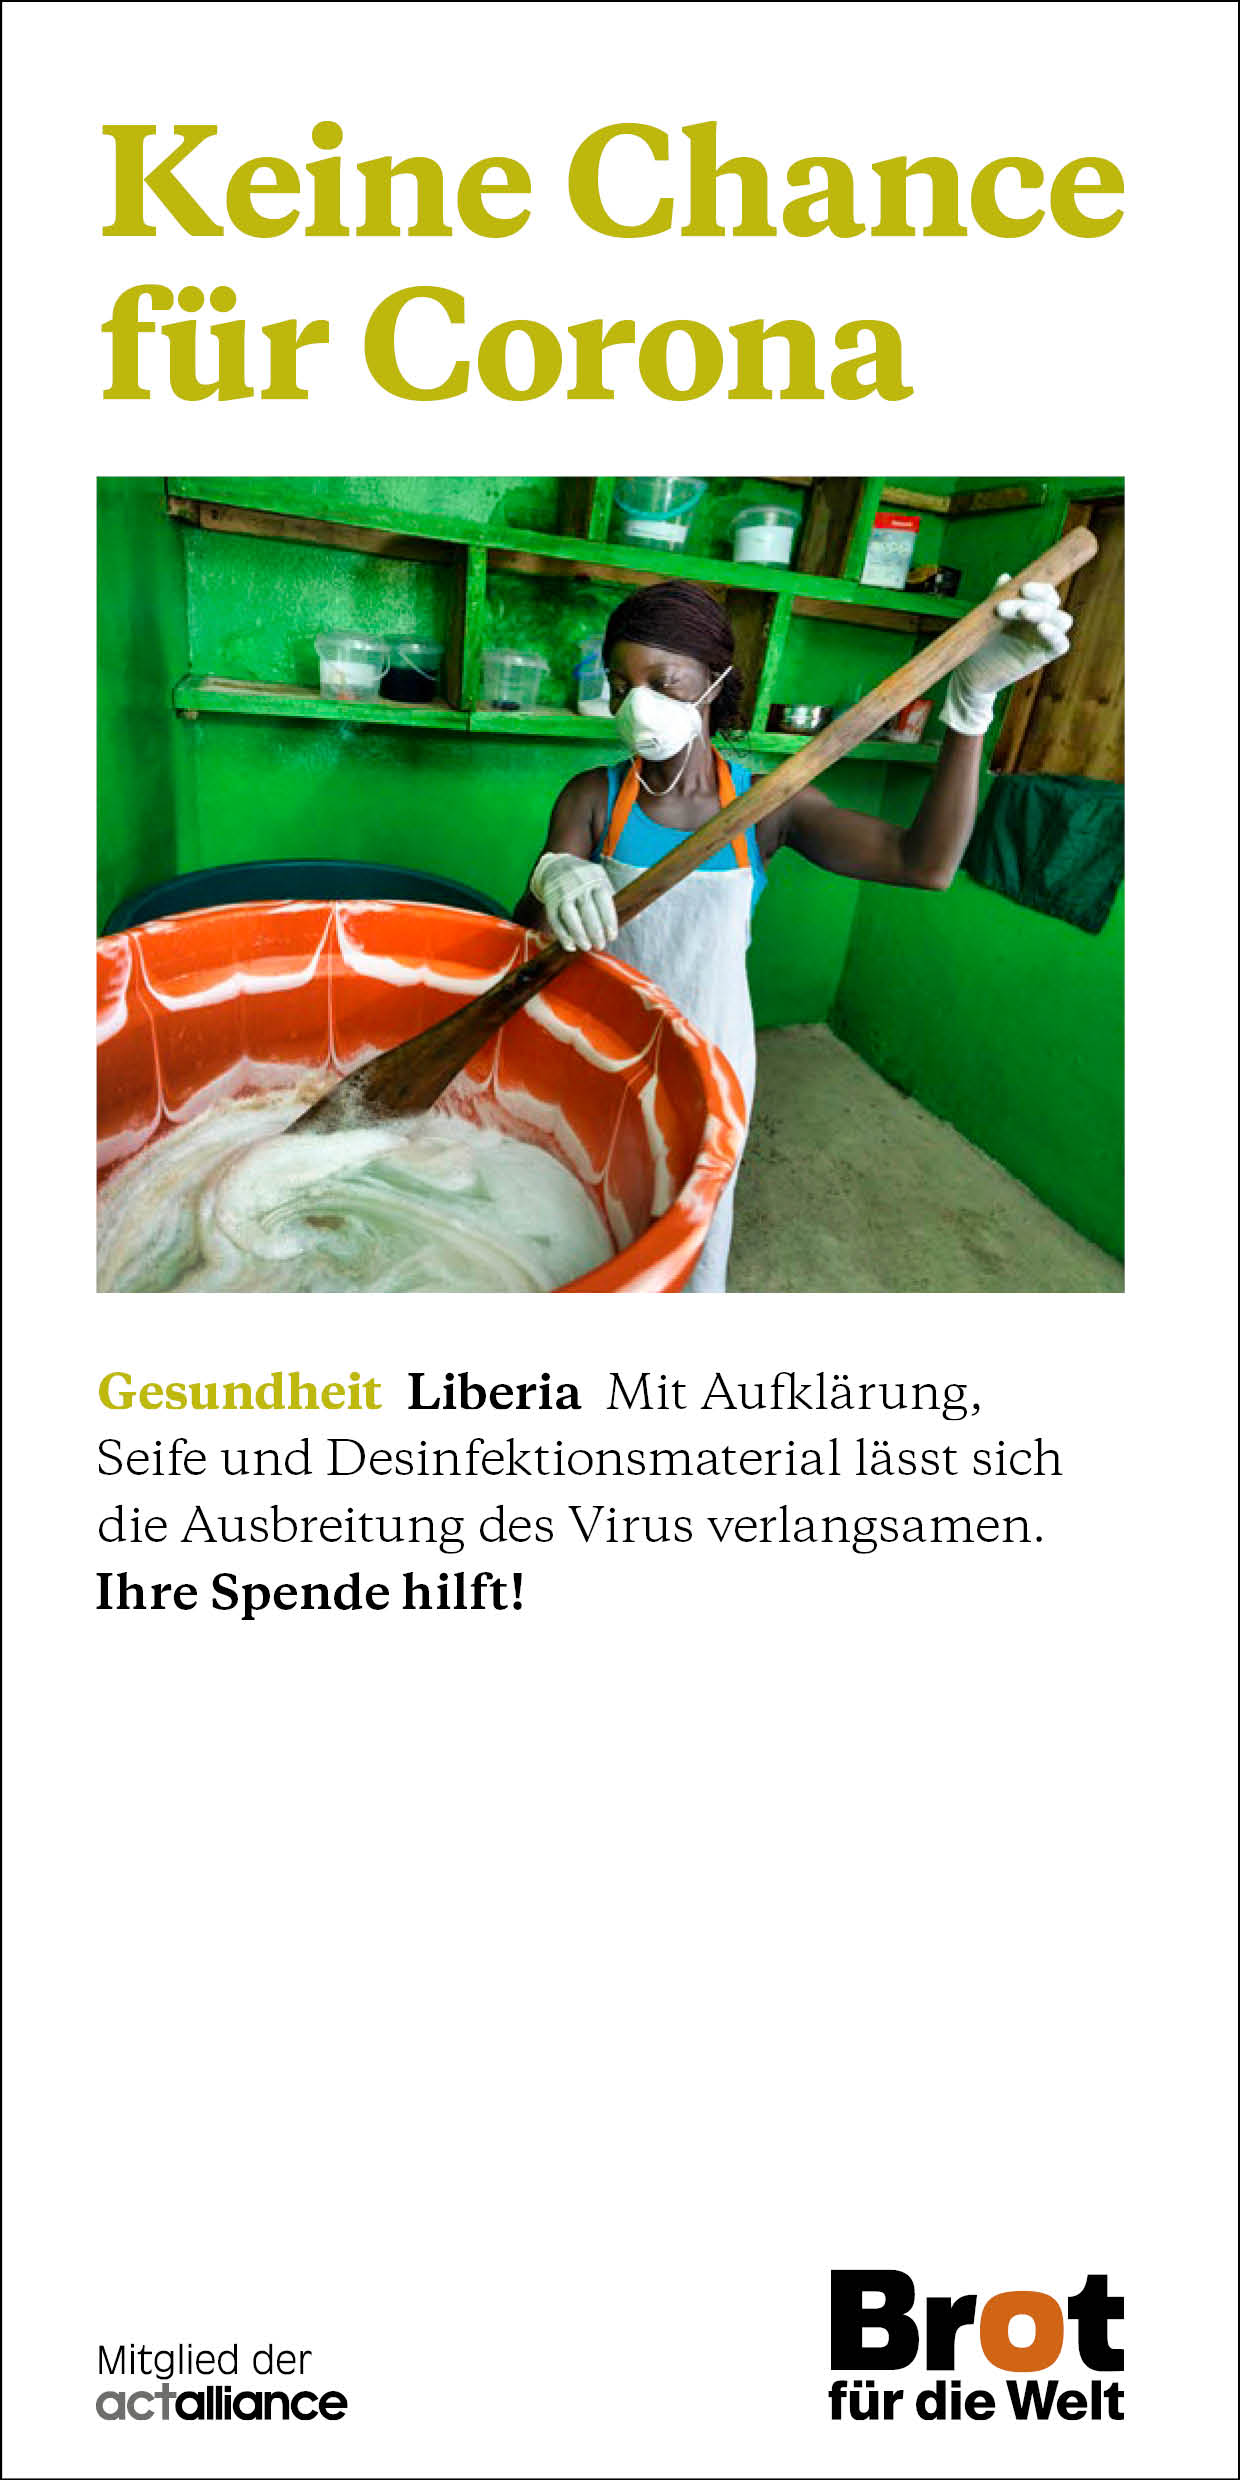 Liberia - Keine Chance für Corona (Faltblatt Gesundheit)